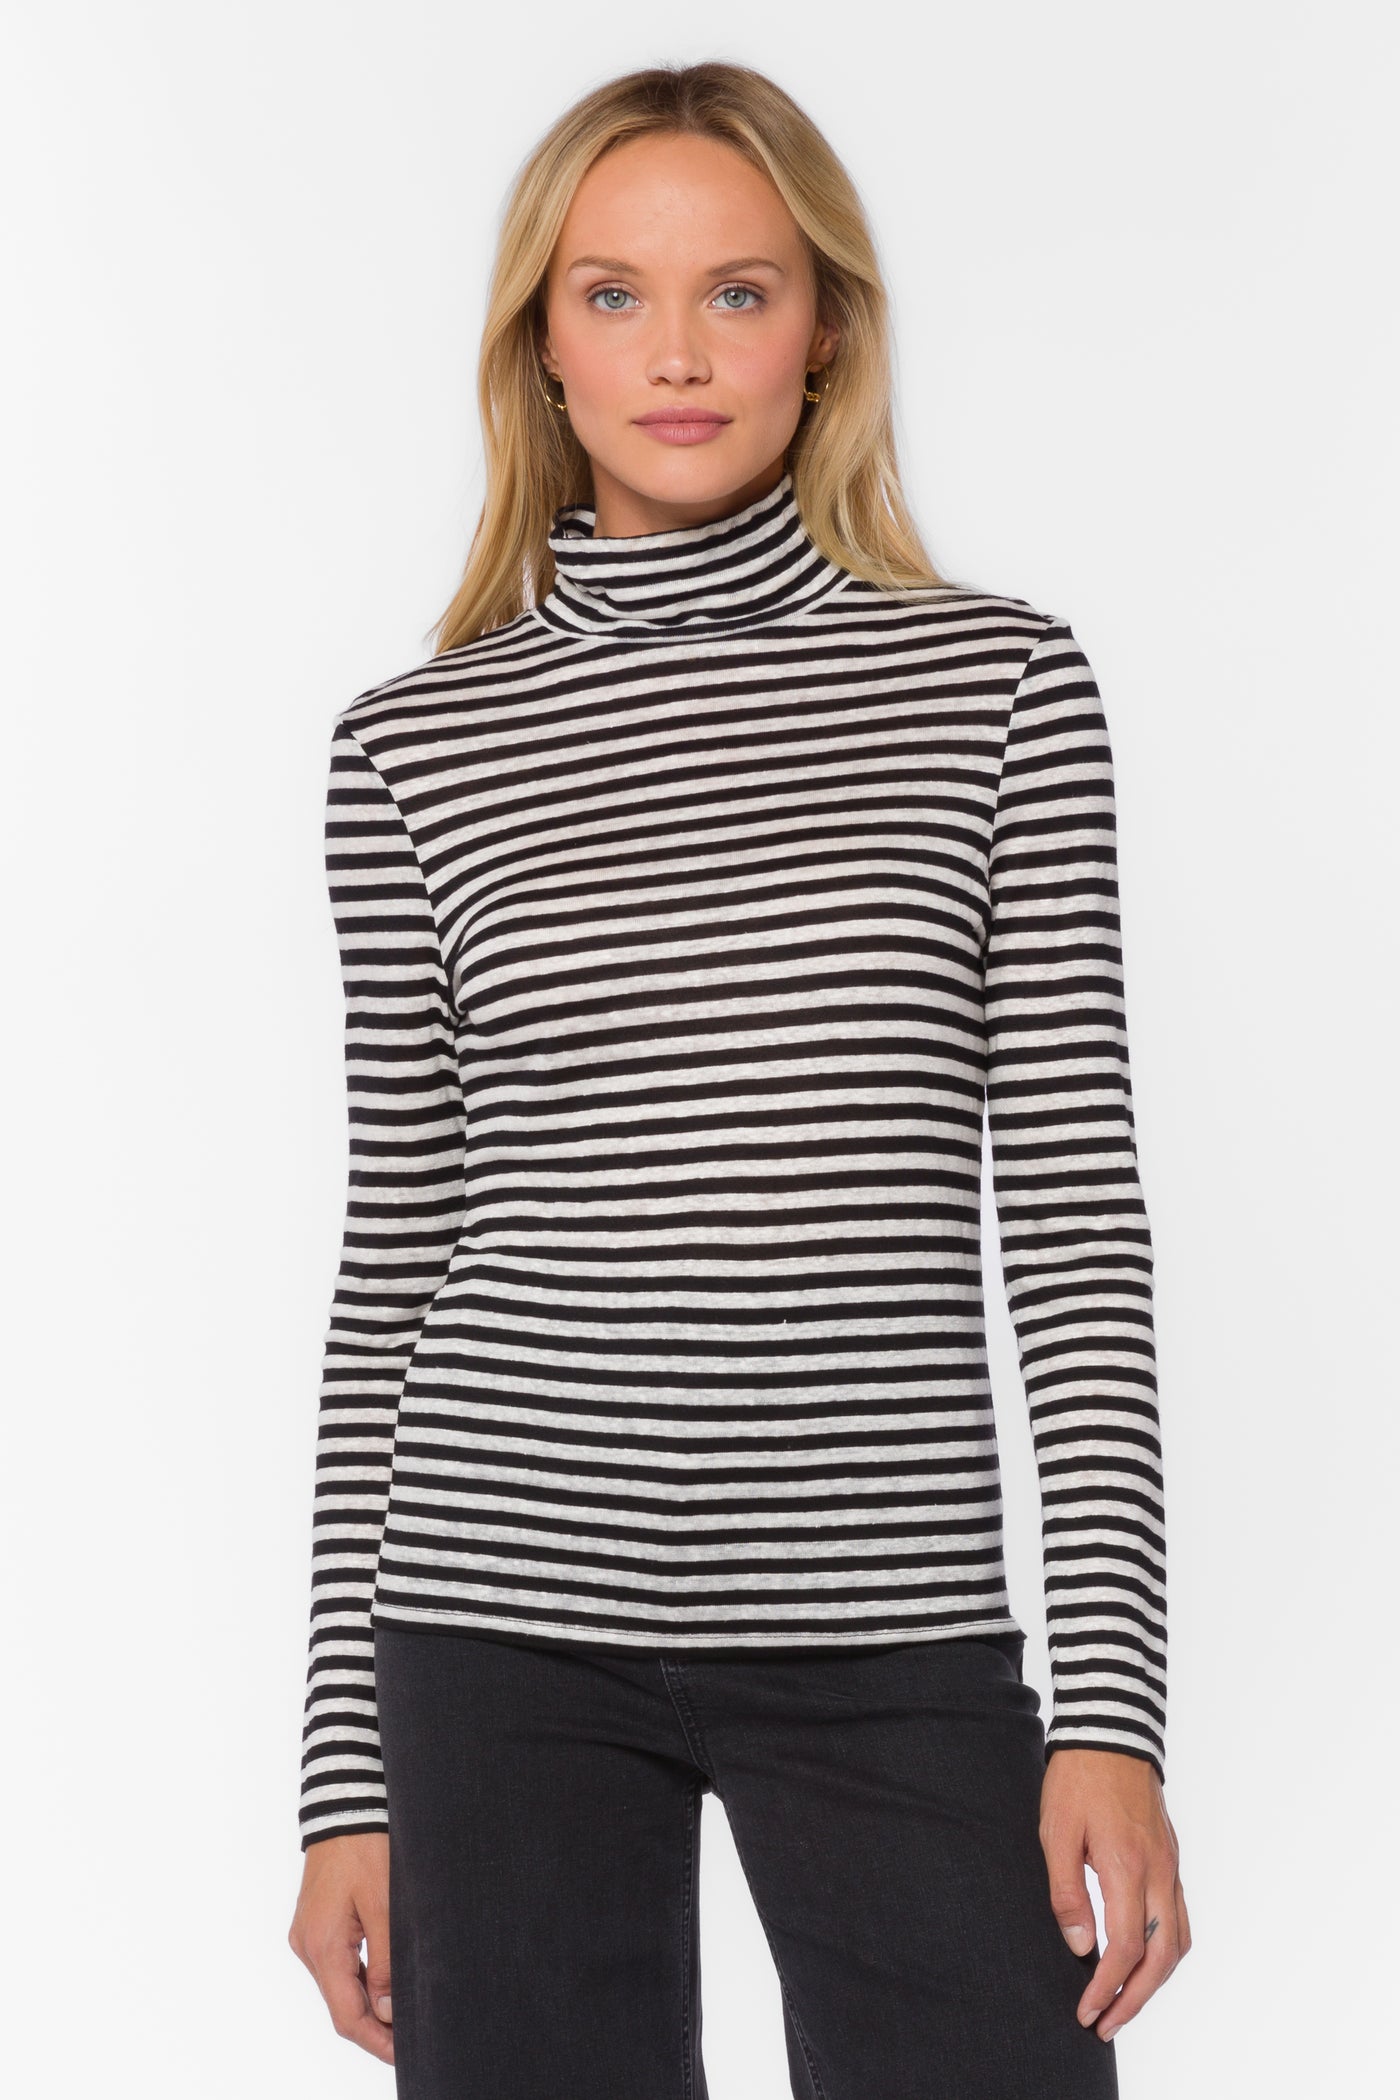 Devone Black White Stripe Top - Tops - Velvet Heart Clothing